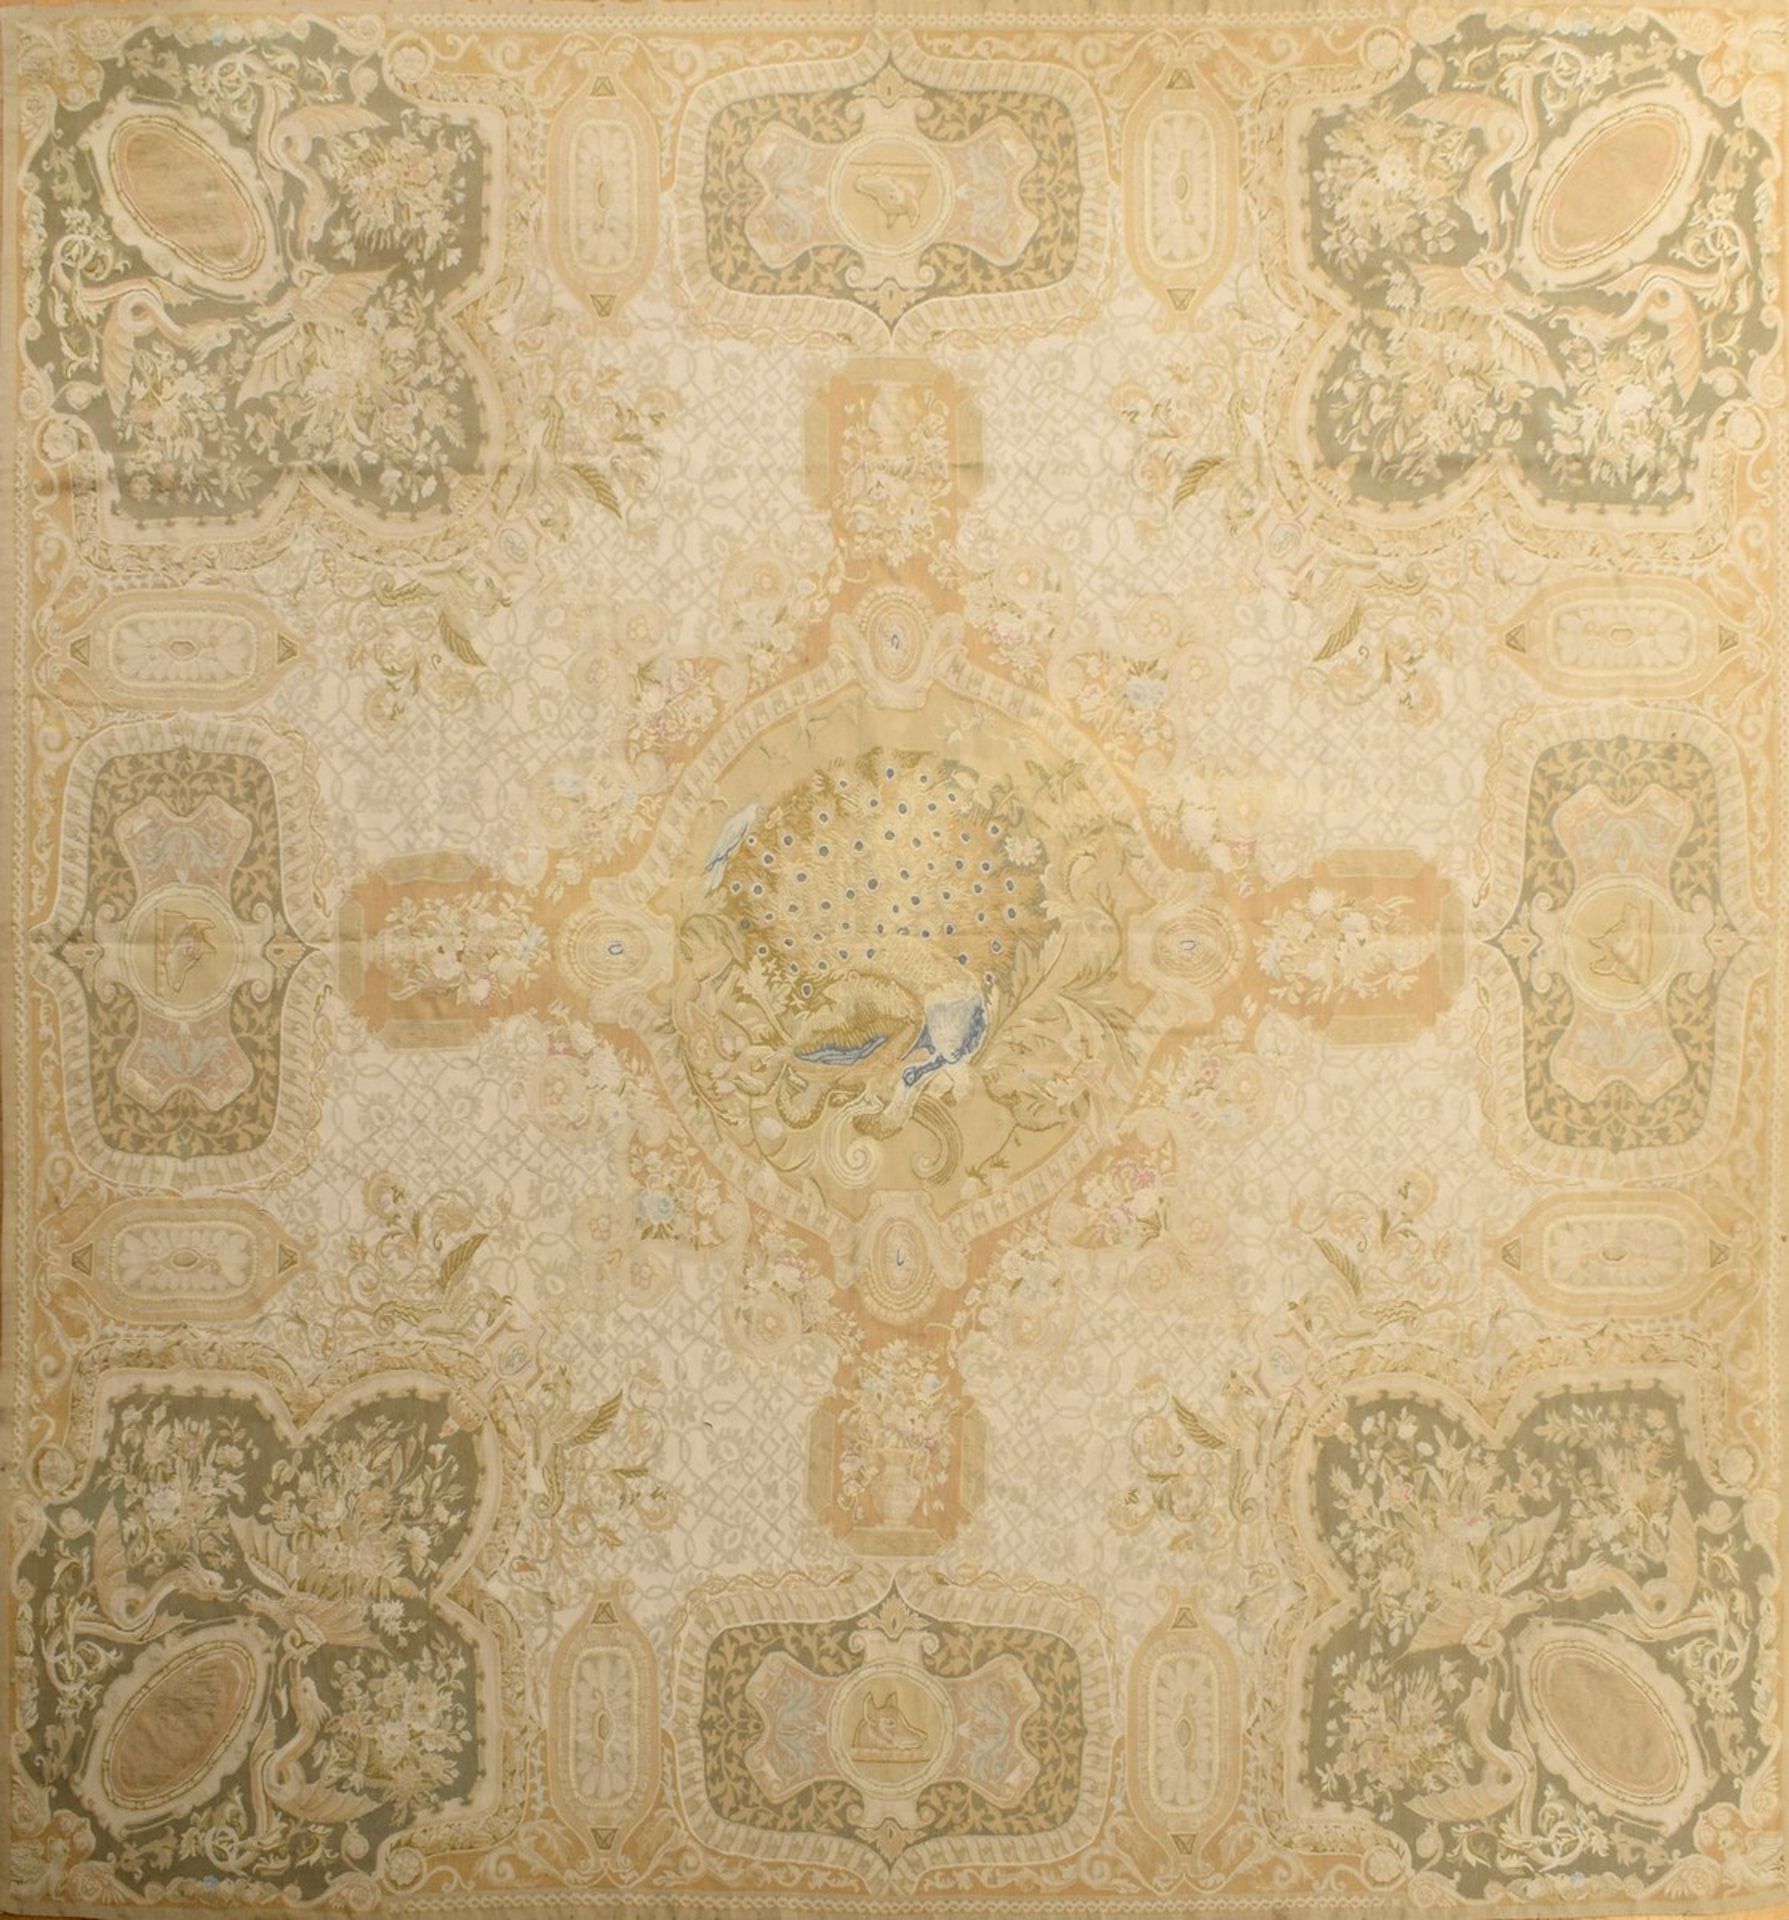 Großer Aubusson Teppich in Grün- und Beigetönen nach altem Vorbild, 20.Jh., 280x310cm